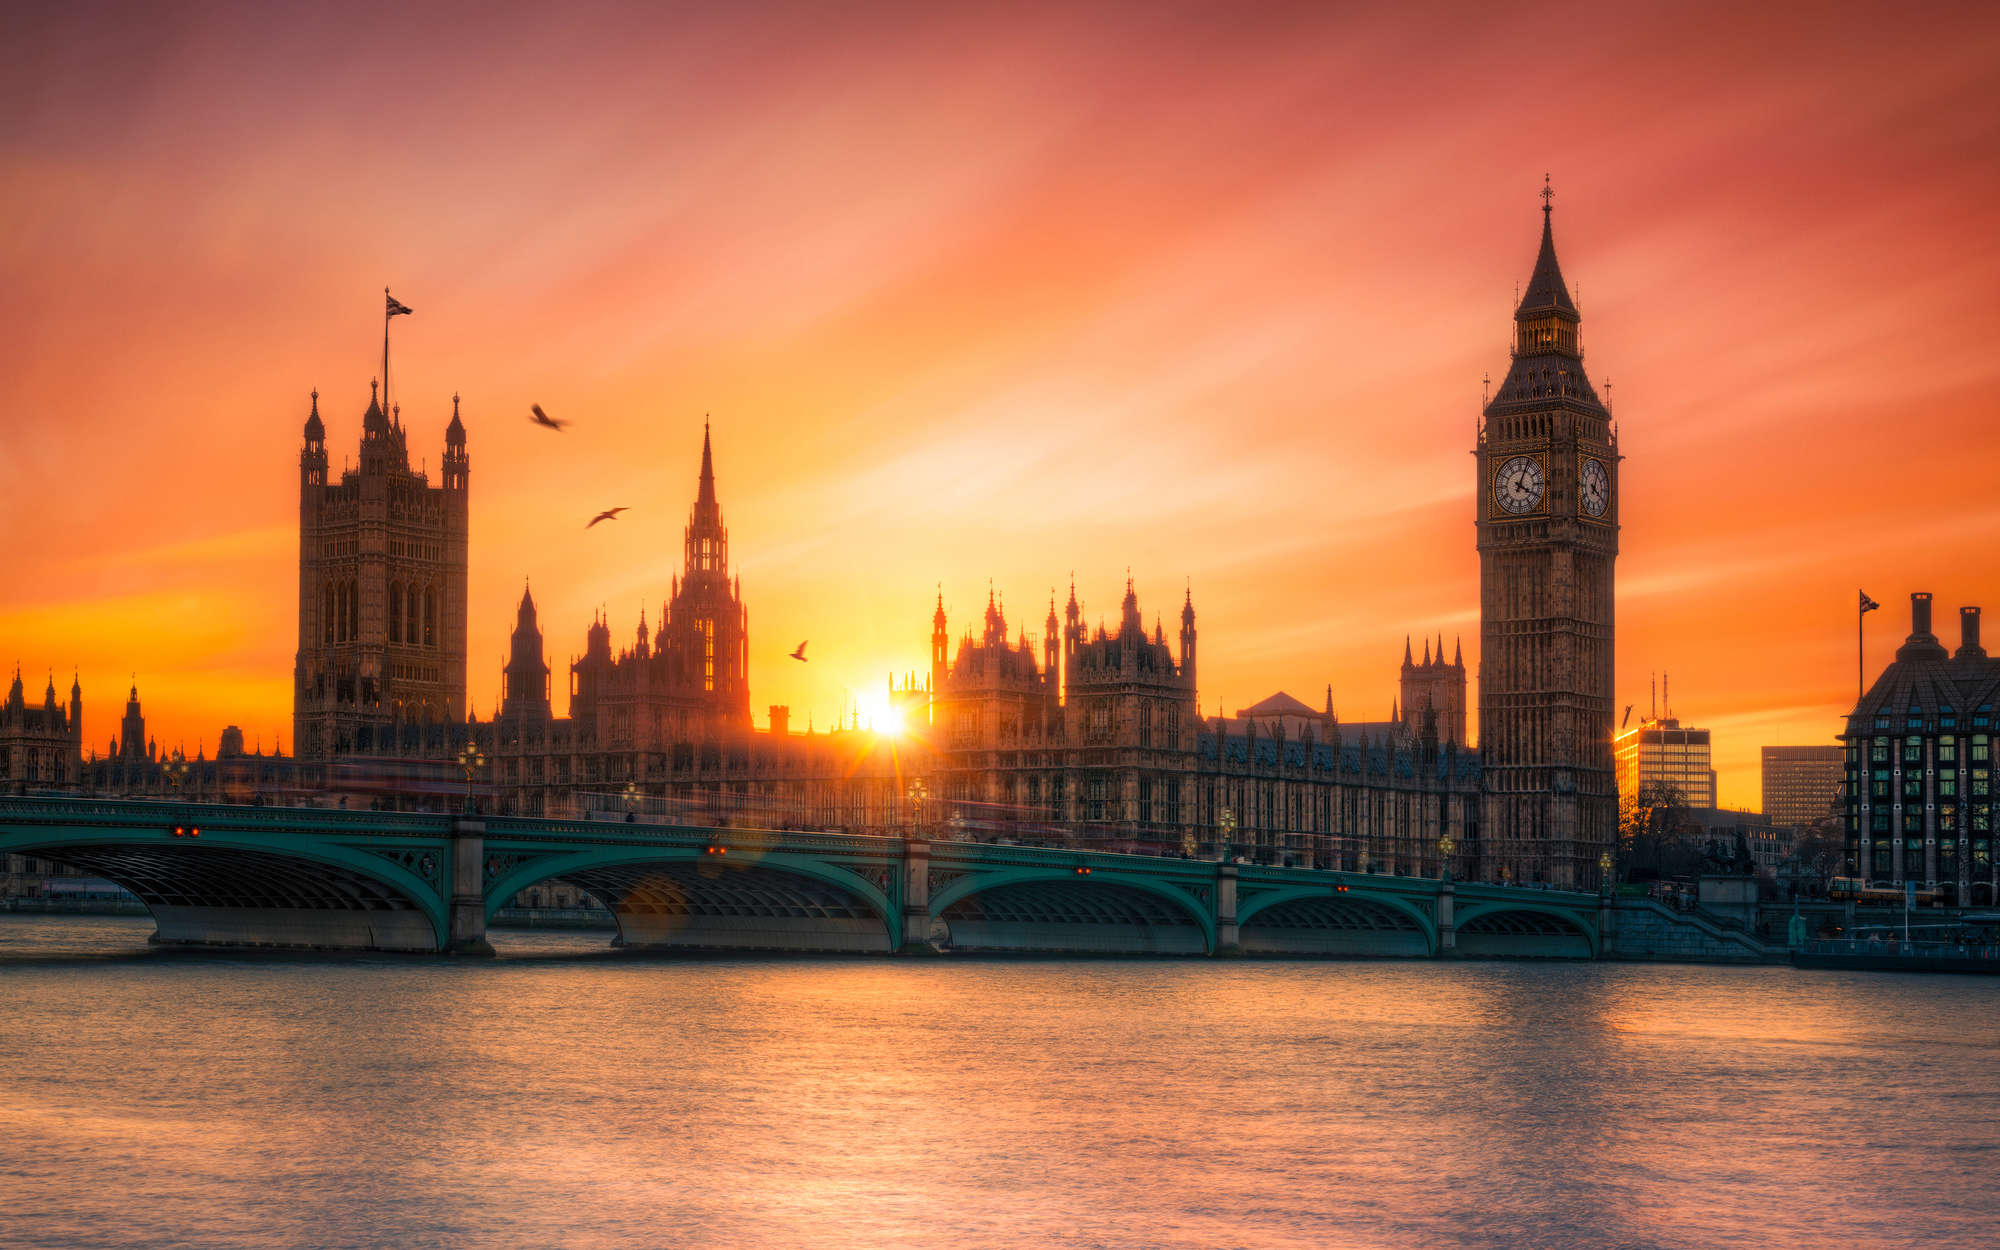             papiers peints à impression numérique London Skyline au coucher du soleil - nacré intissé lisse
        